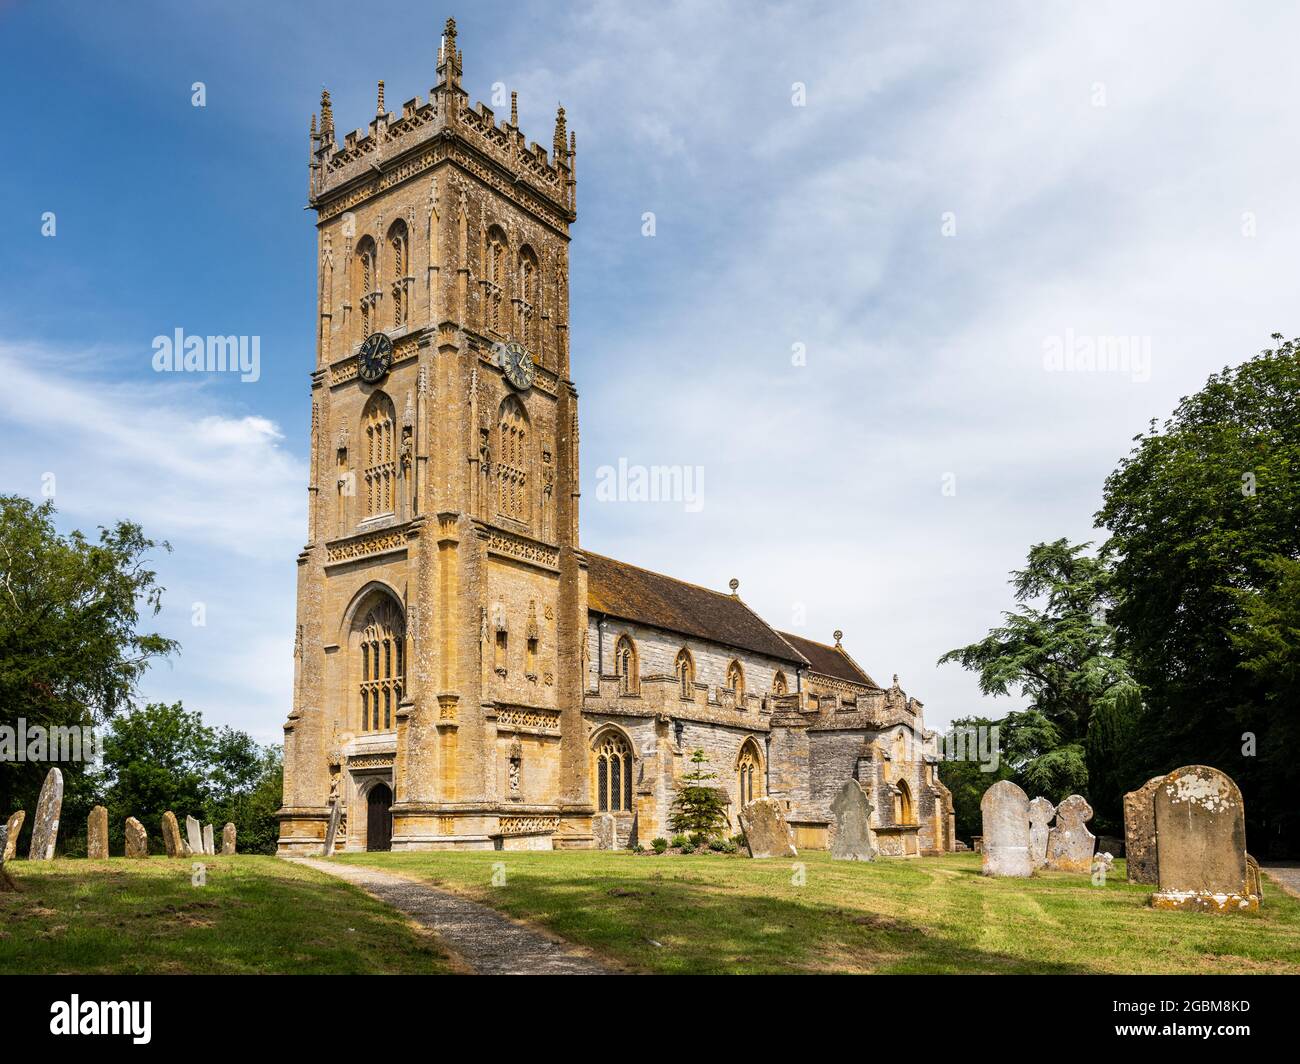 Die traditionelle gotische Pfarrkirche St. Martin im Dorf Kingsbury Episcopi mit ihrem markanten Somerset Tower aus Hamstein. Stockfoto